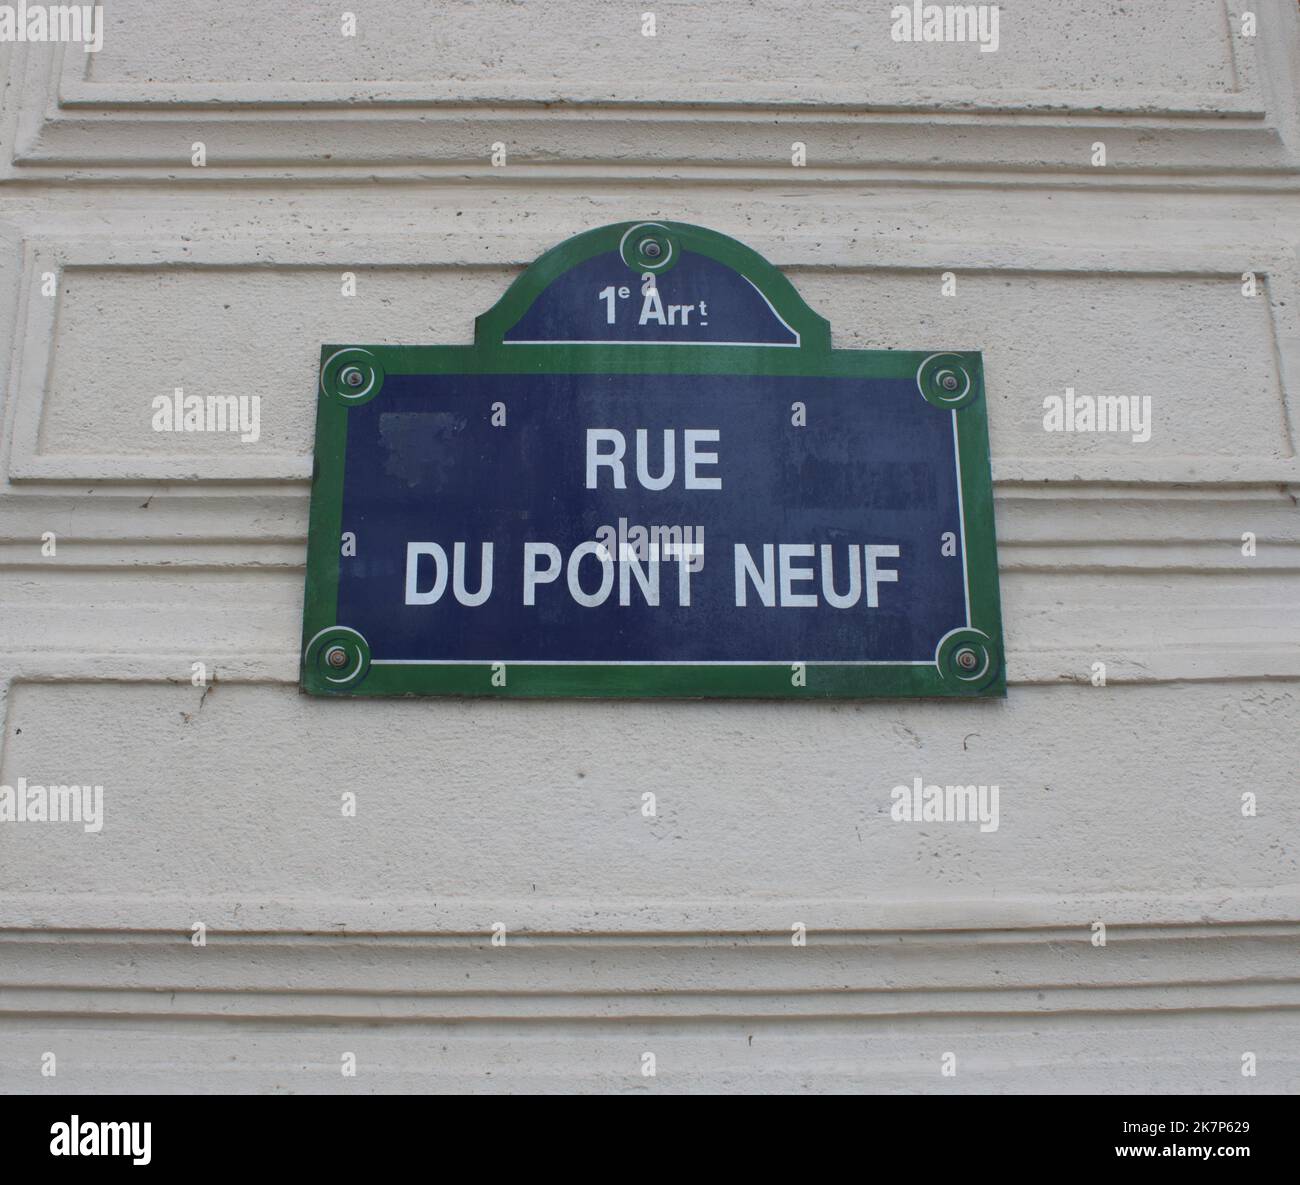 Rue parisienne typique ici représentant la rue du Pont neuf située dans le 1st arrondissement de Paris France. Banque D'Images